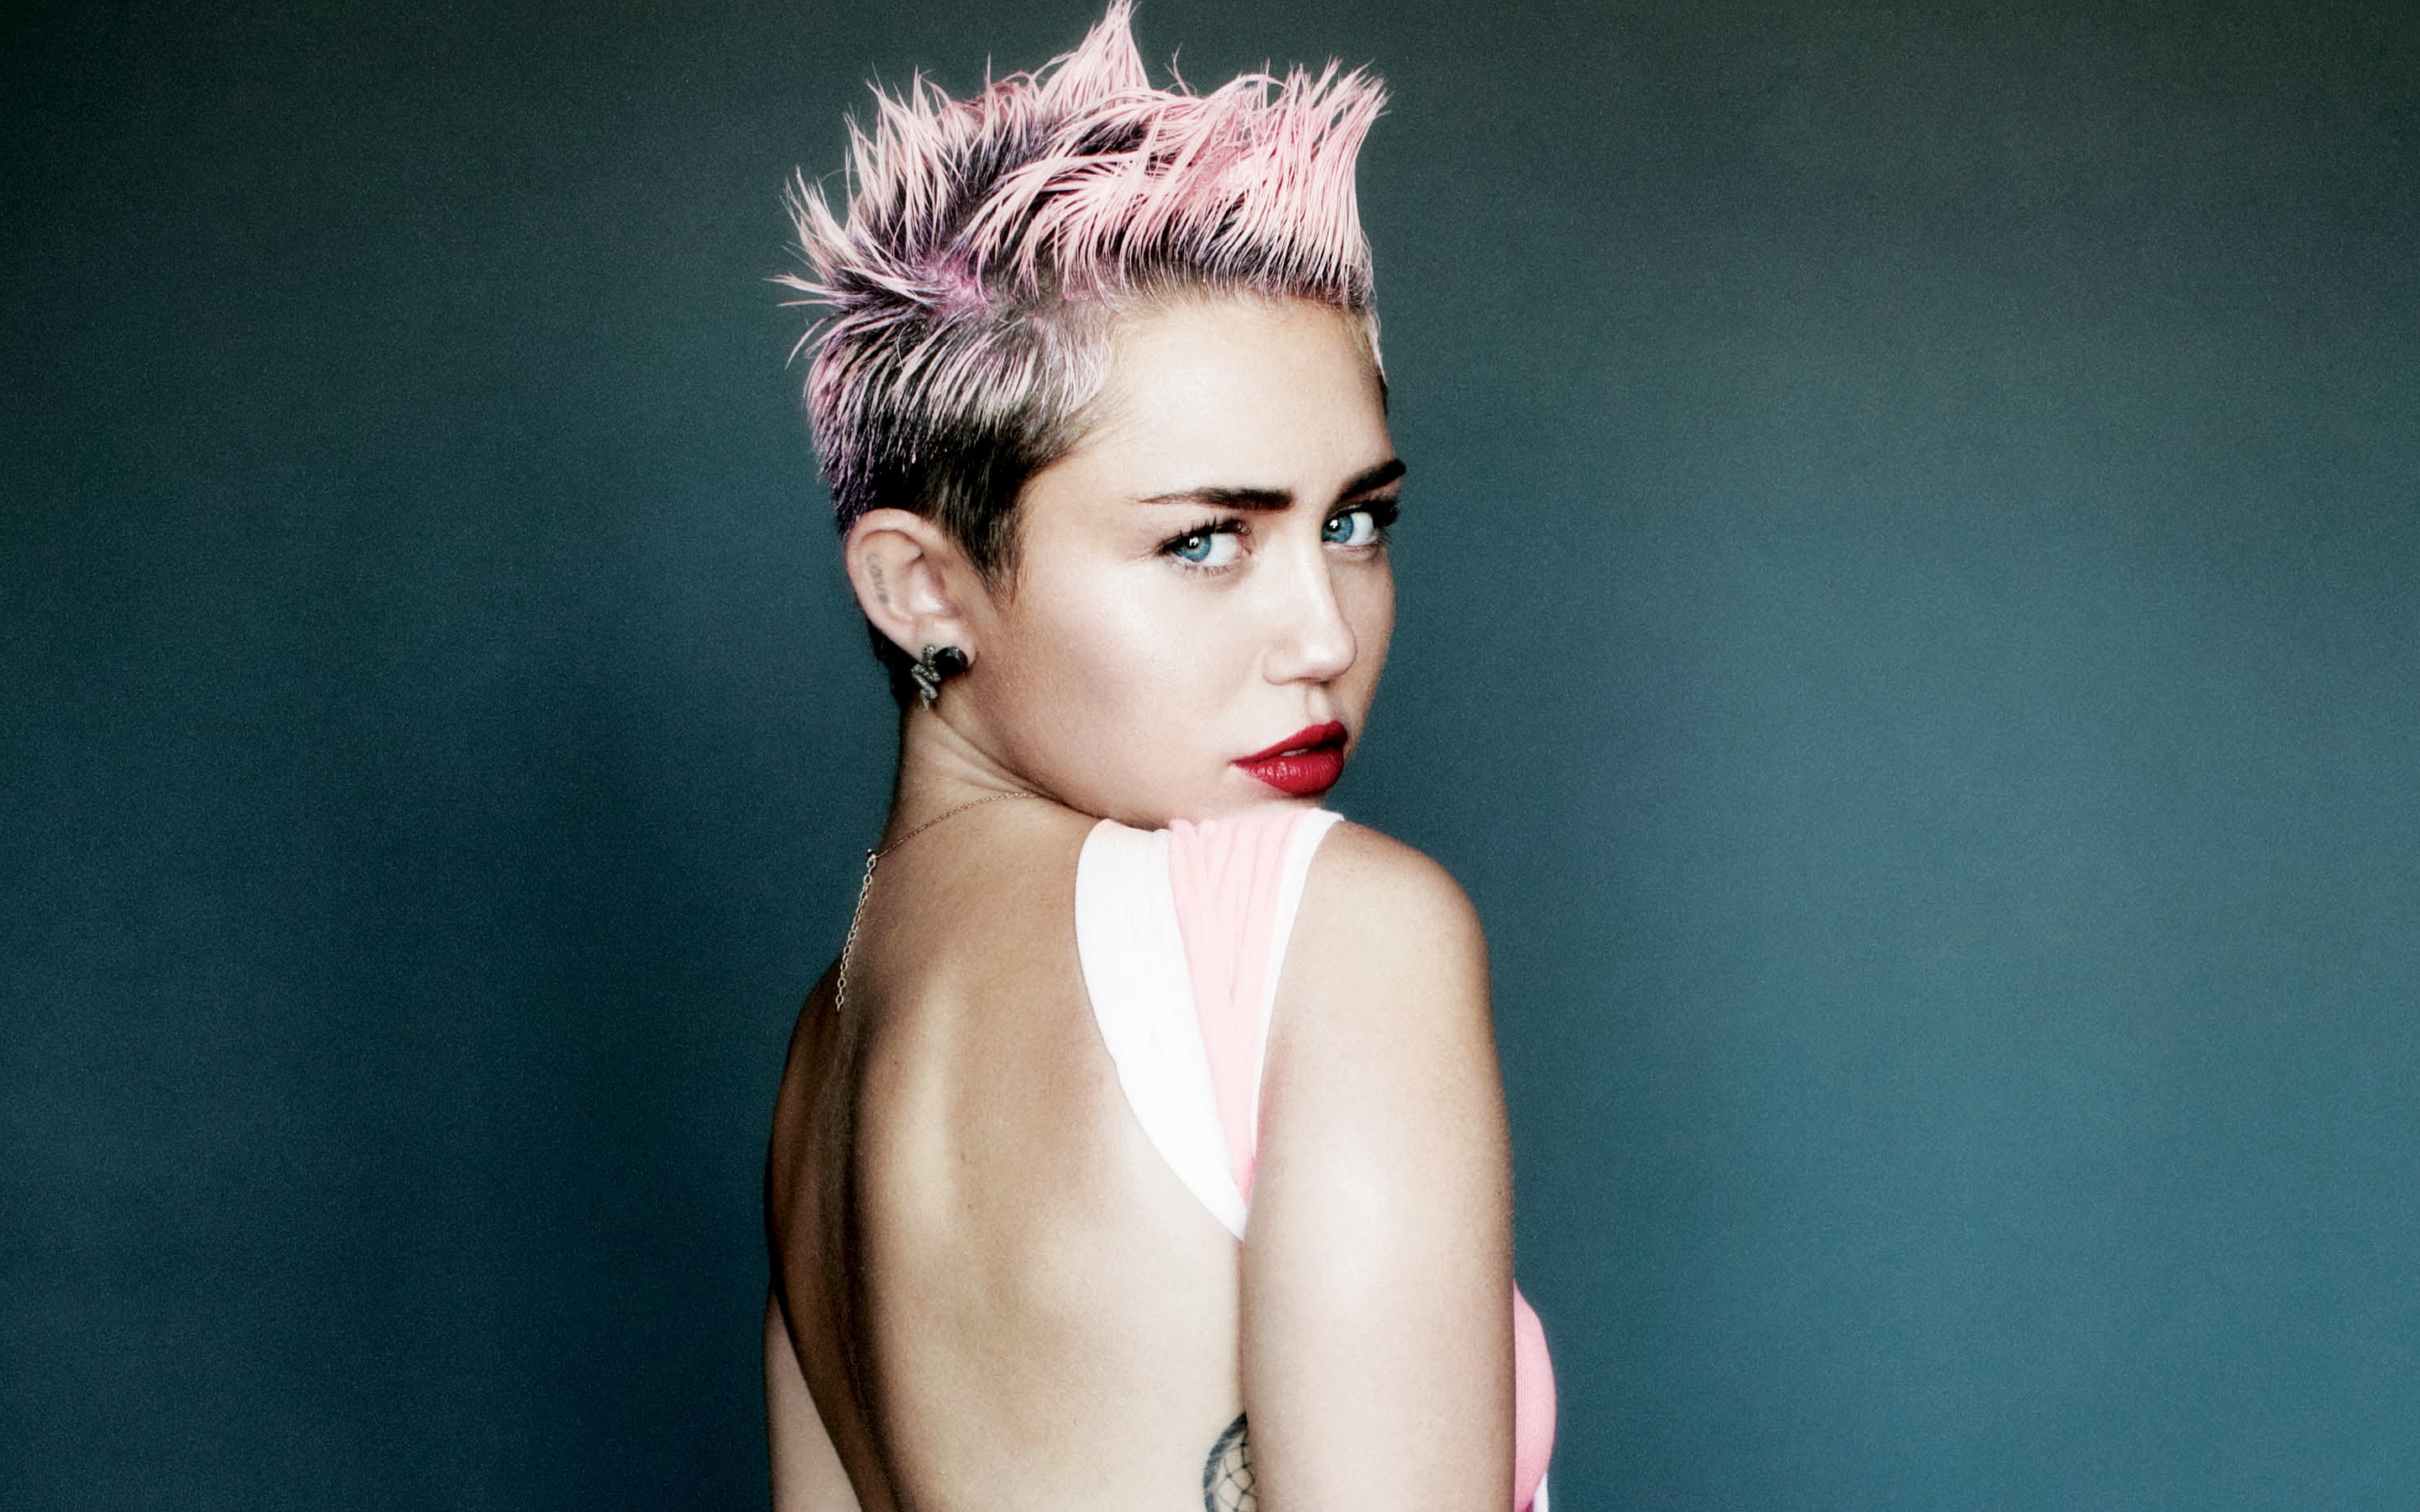 Descarga gratuita de fondo de pantalla para móvil de Música, Miley Cyrus.